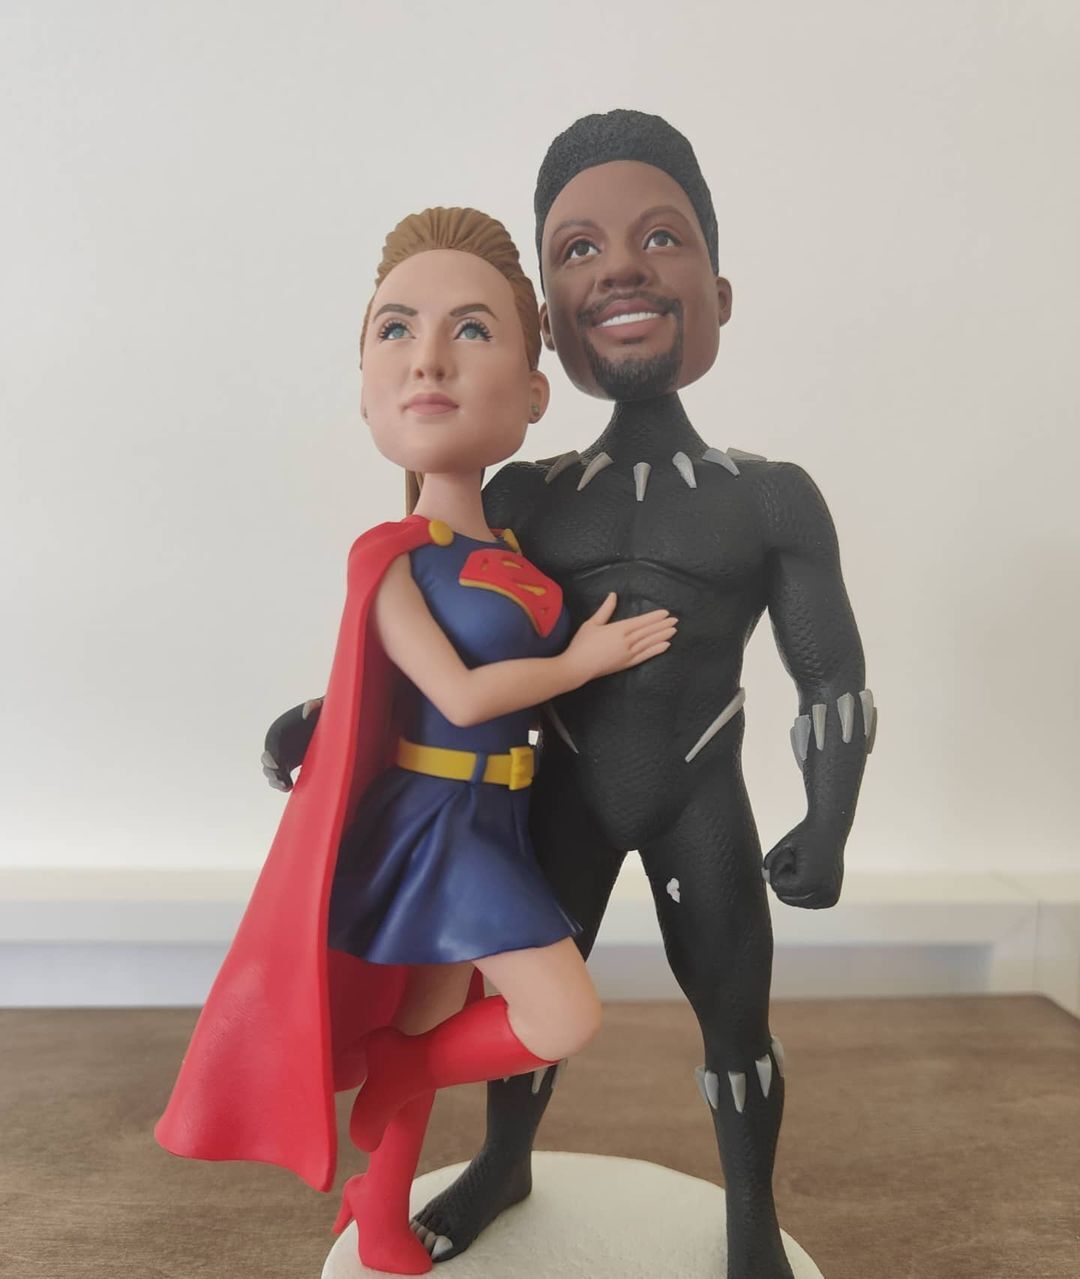 Гаэль Монфис и Элина Свитолина в образе супергероев